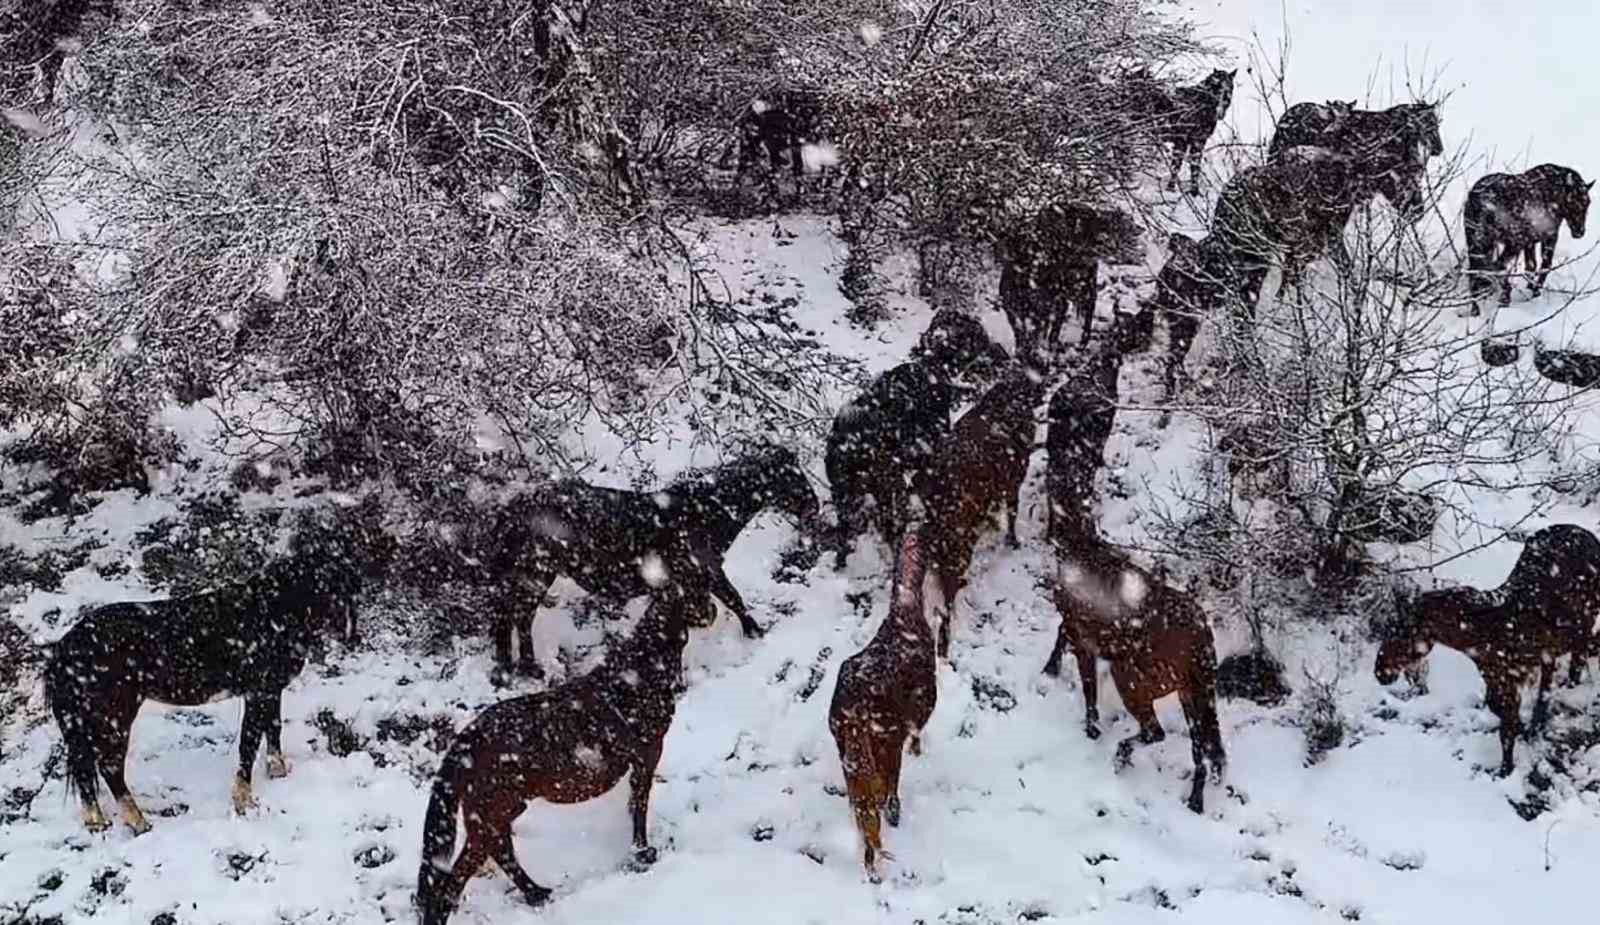 Yılkı atlarının sürü halinde karlar içinde dolaşması güzel ve muhteşem görüntüler ortaya çıkardı
